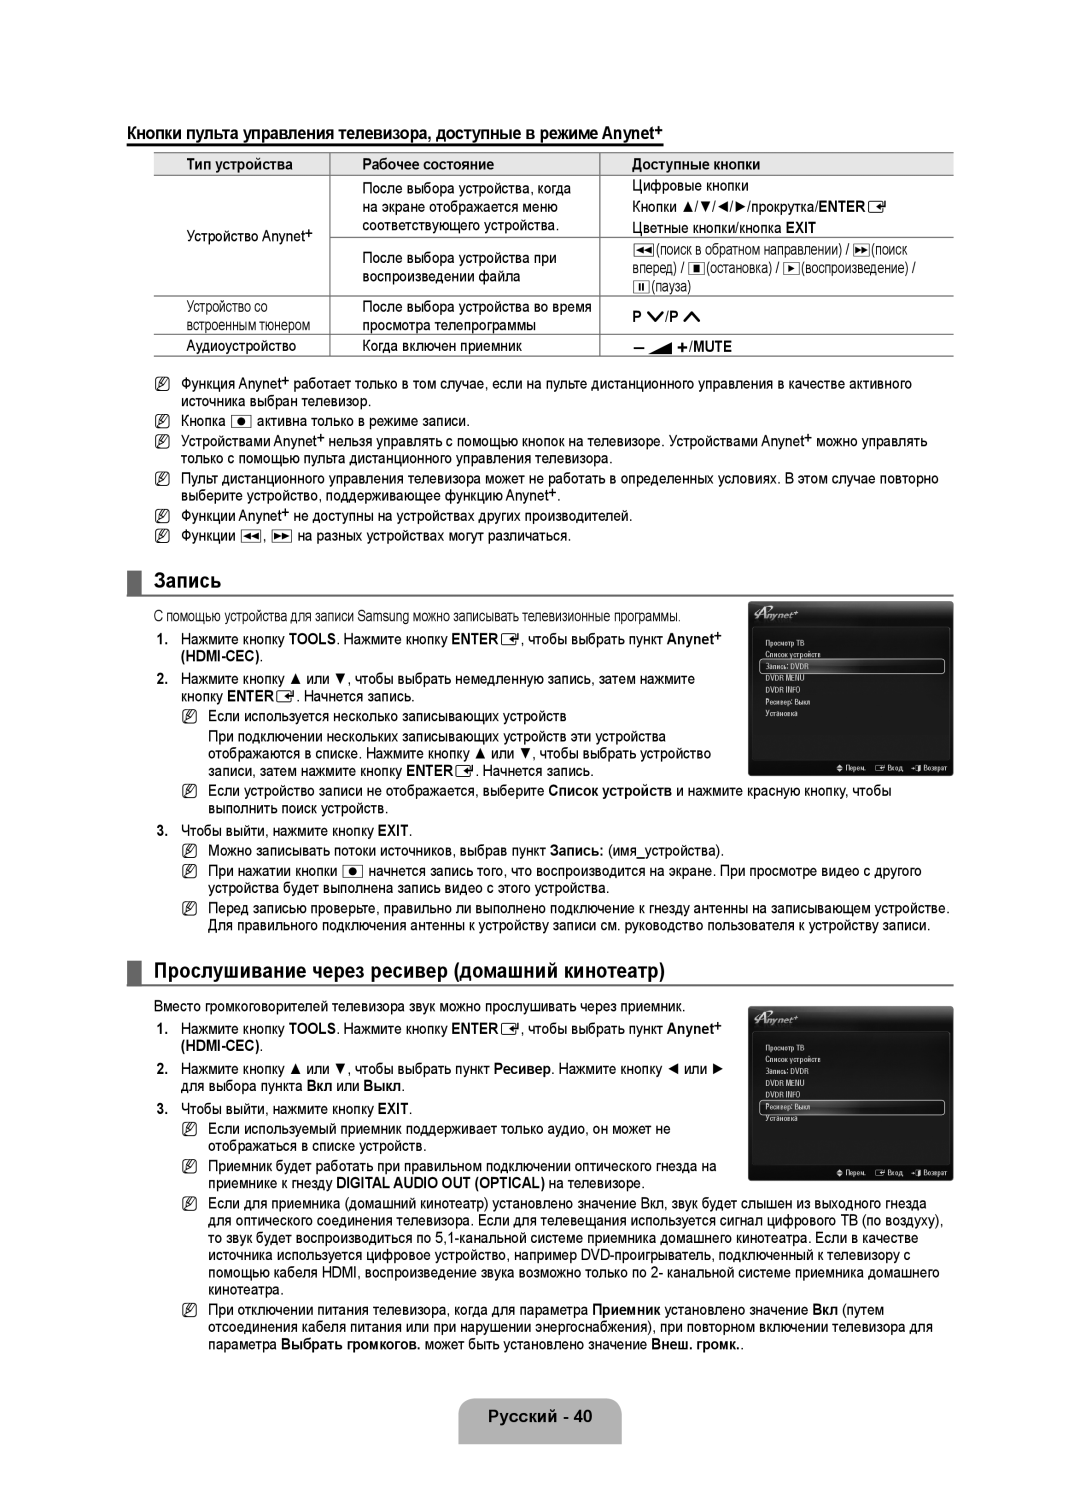 Samsung UE40B6000VWXXN Запись, Прослушивание через ресивер домашний кинотеатр, Тип устройства, Рабочее состояние, P /P 